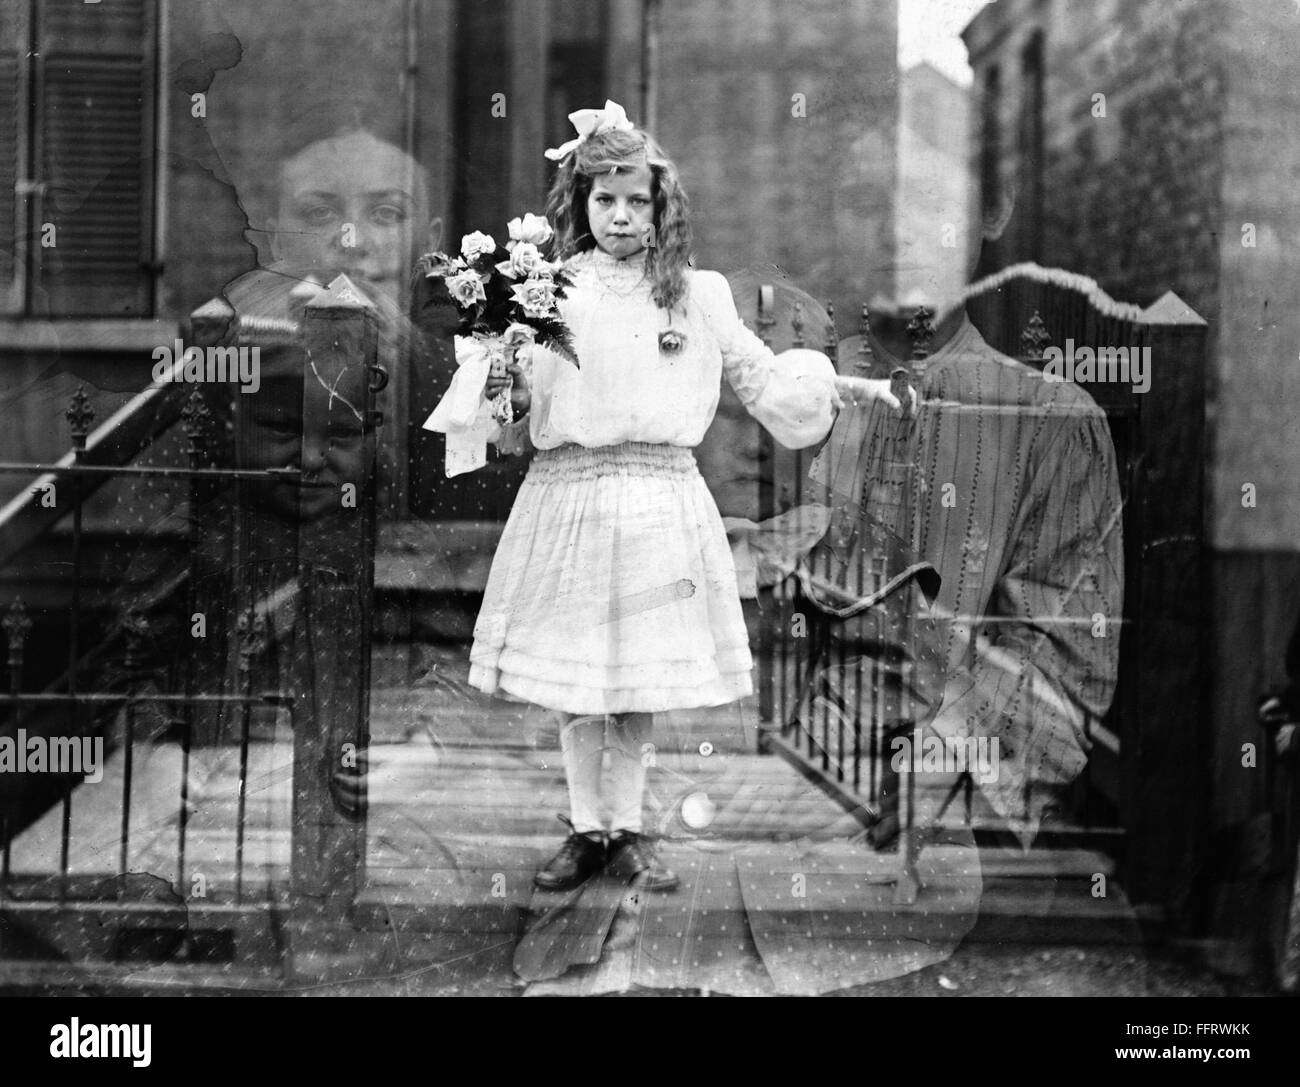 Spirito fotografia, c1905. /Ndoppia esposizione "acquavite" fotografia di una ragazza circondata da figure spettrali delle donne tenendo i neonati. Fotografia di G.S. Smallwood, c1905. Foto Stock